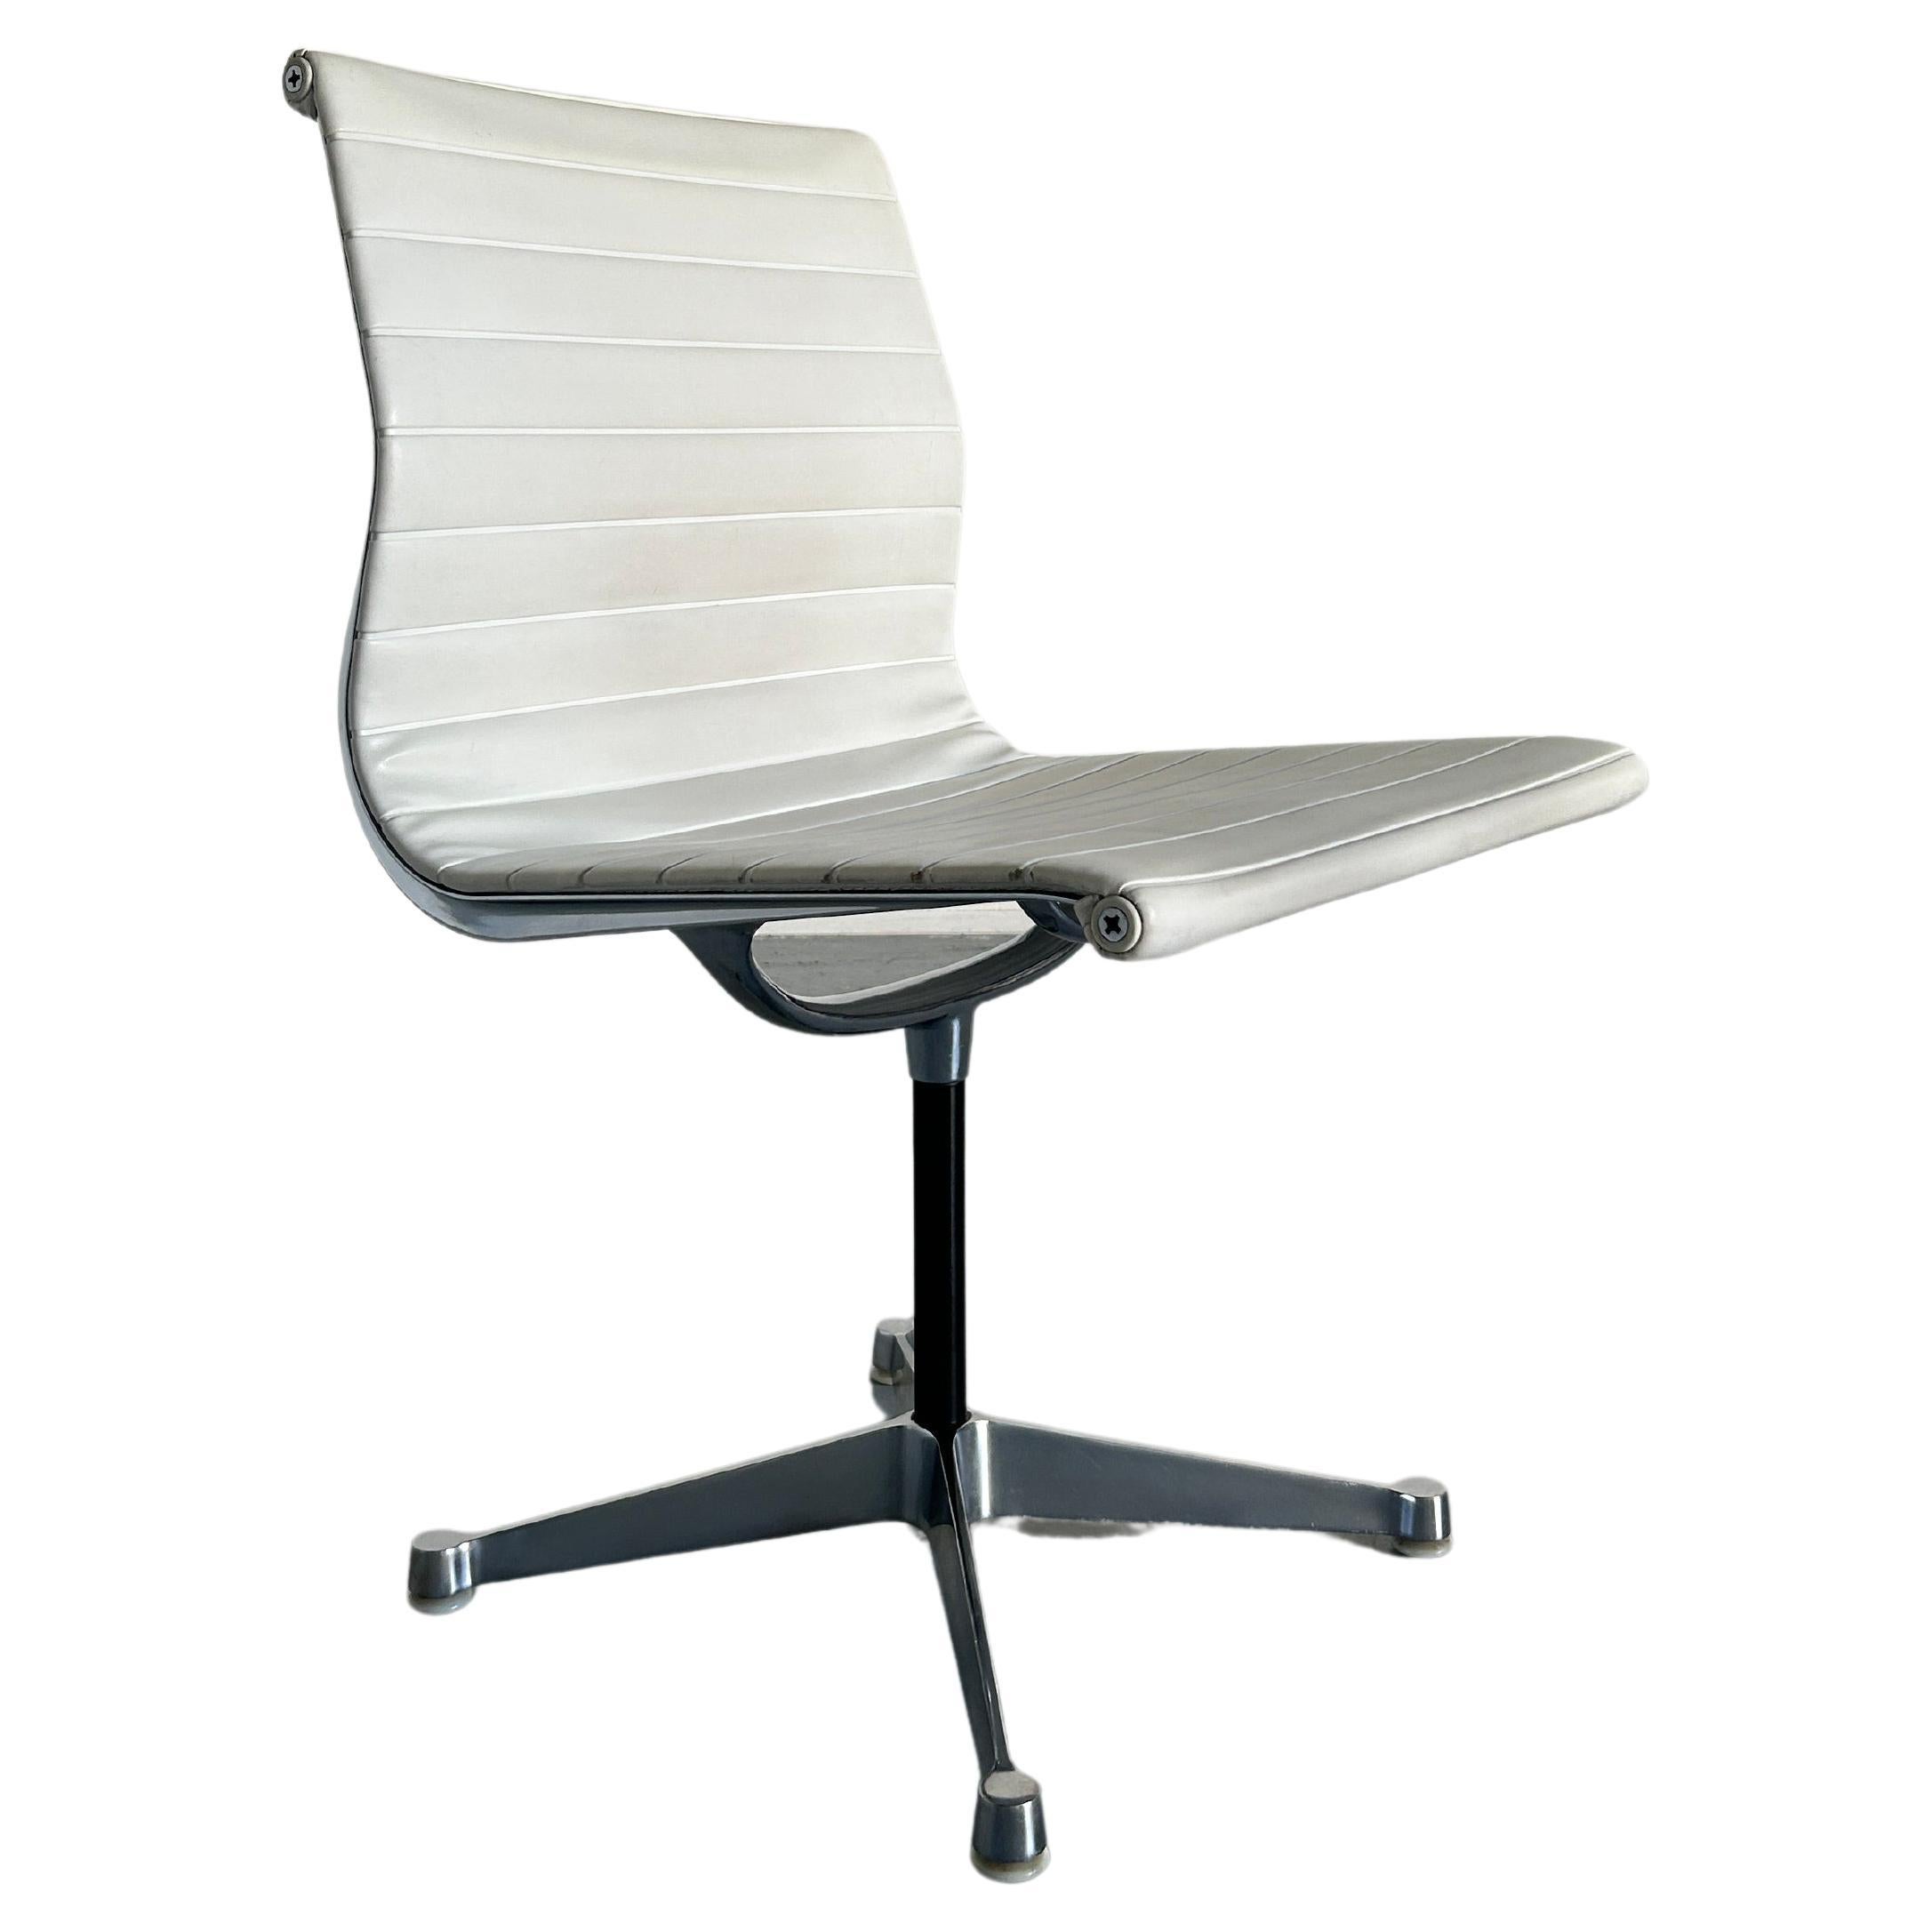 L'une des cinq chaises originales Aluminium EA107 conçues par Charles et Ray Eames en 1958.
Base en aluminium chromé et cuir blanc.
Non pivotant. 
Édition Herman Miller, signée.
Une qualité de production exceptionnelle.

Produit au début des années